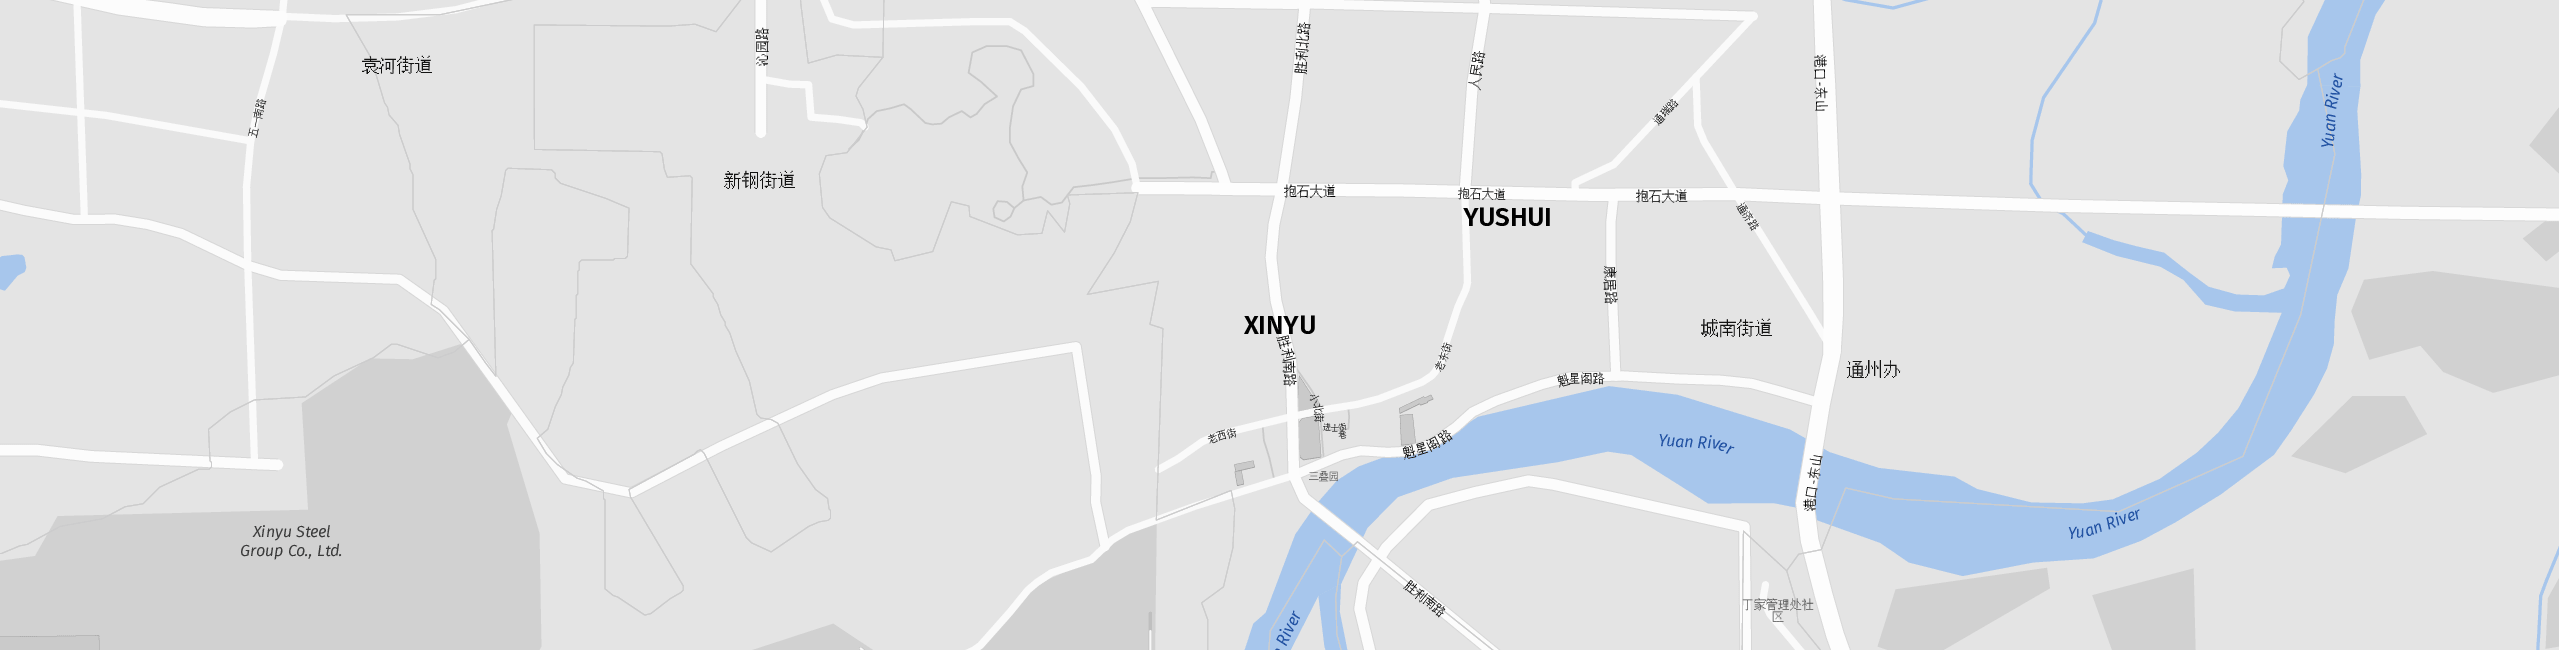 Stadtplan Xinyu zum Downloaden.